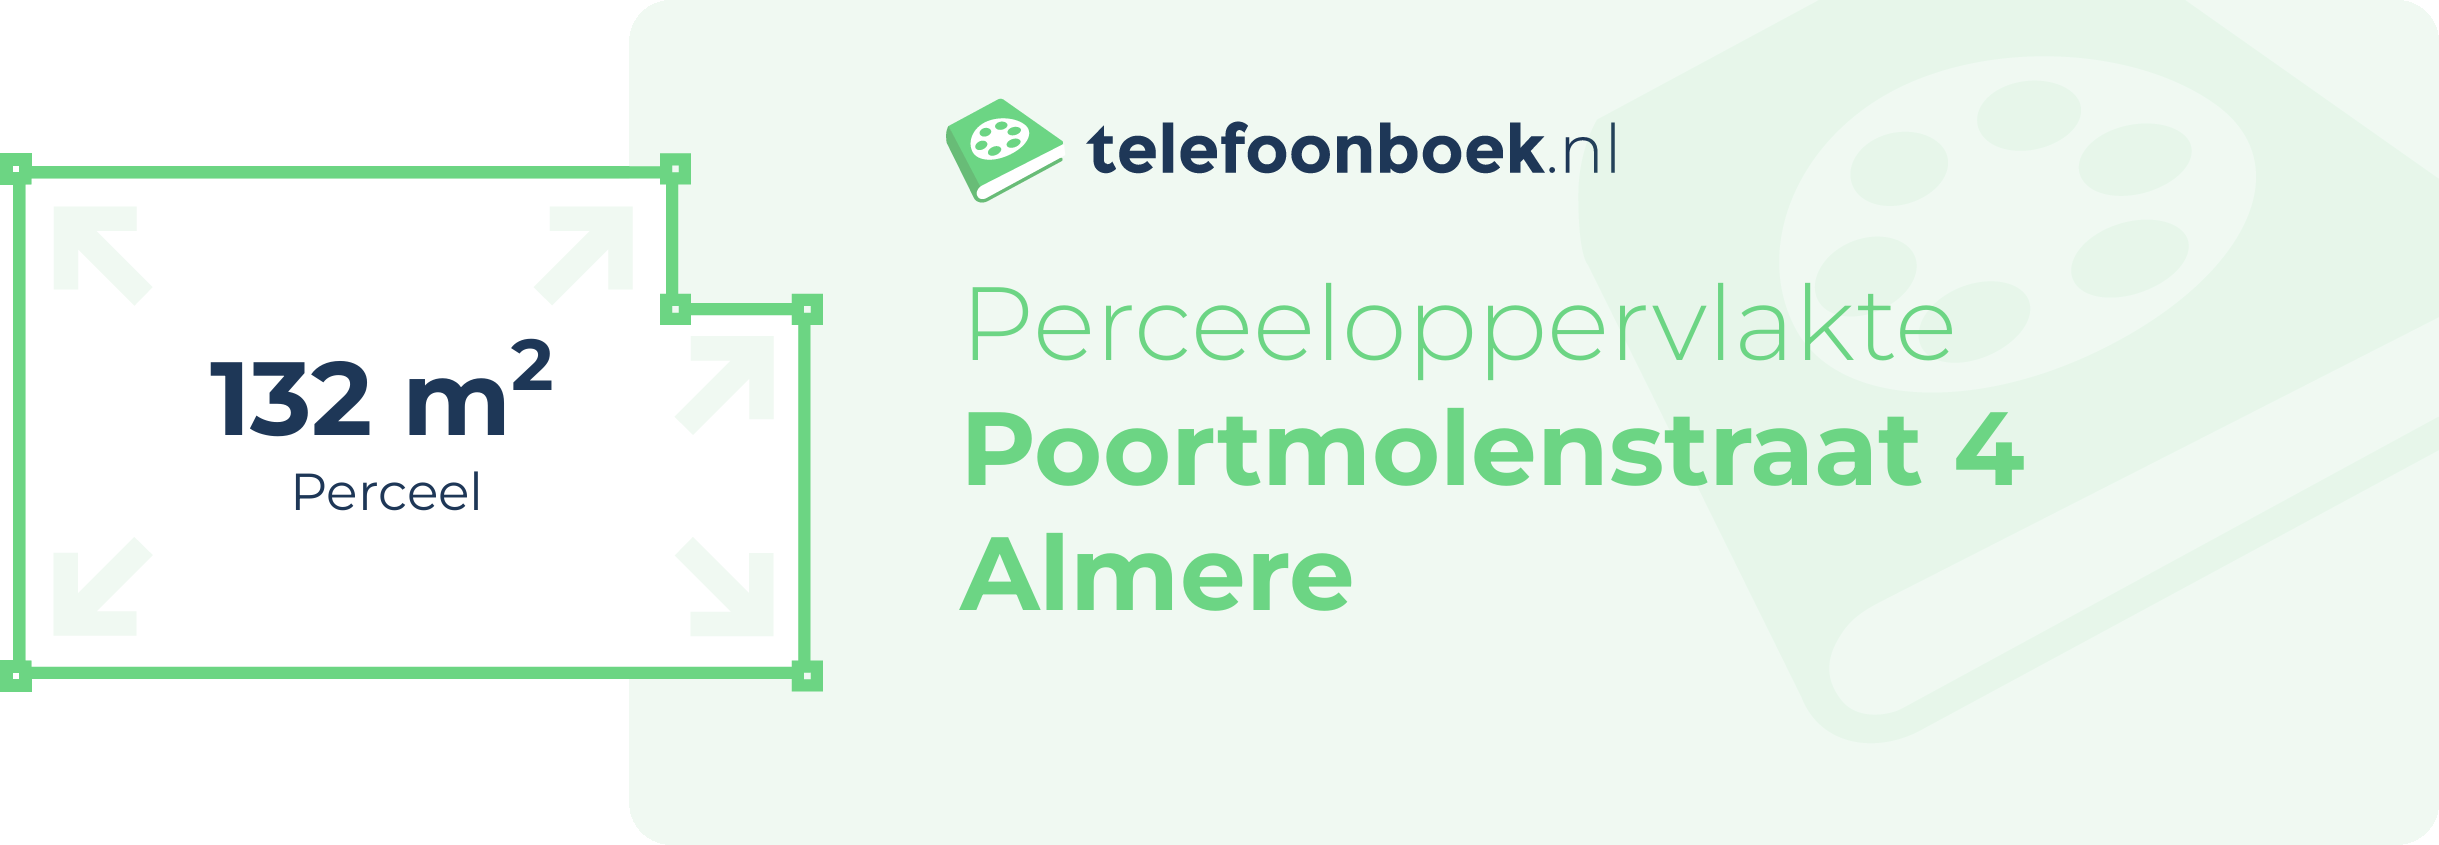 Perceeloppervlakte Poortmolenstraat 4 Almere